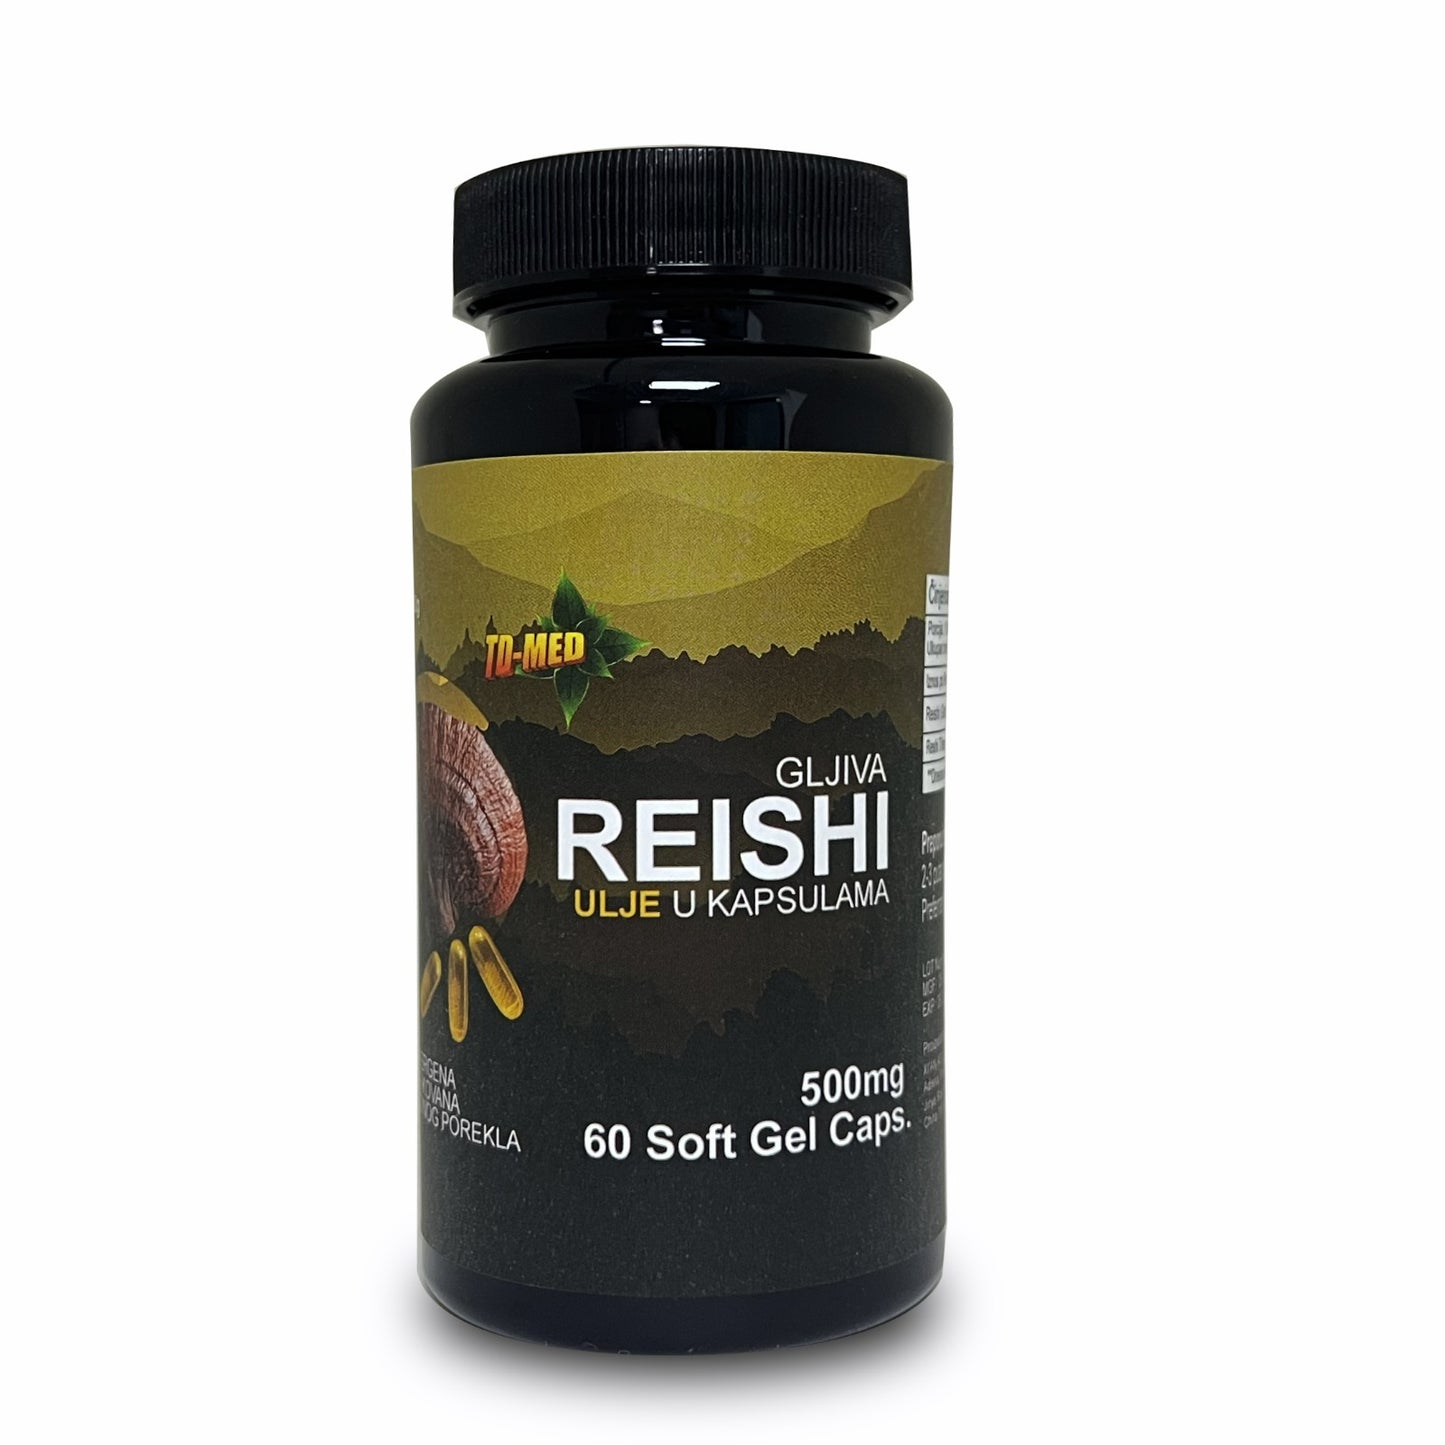 REISHI-Ganoderma Oil 60 caps-Original 500mg